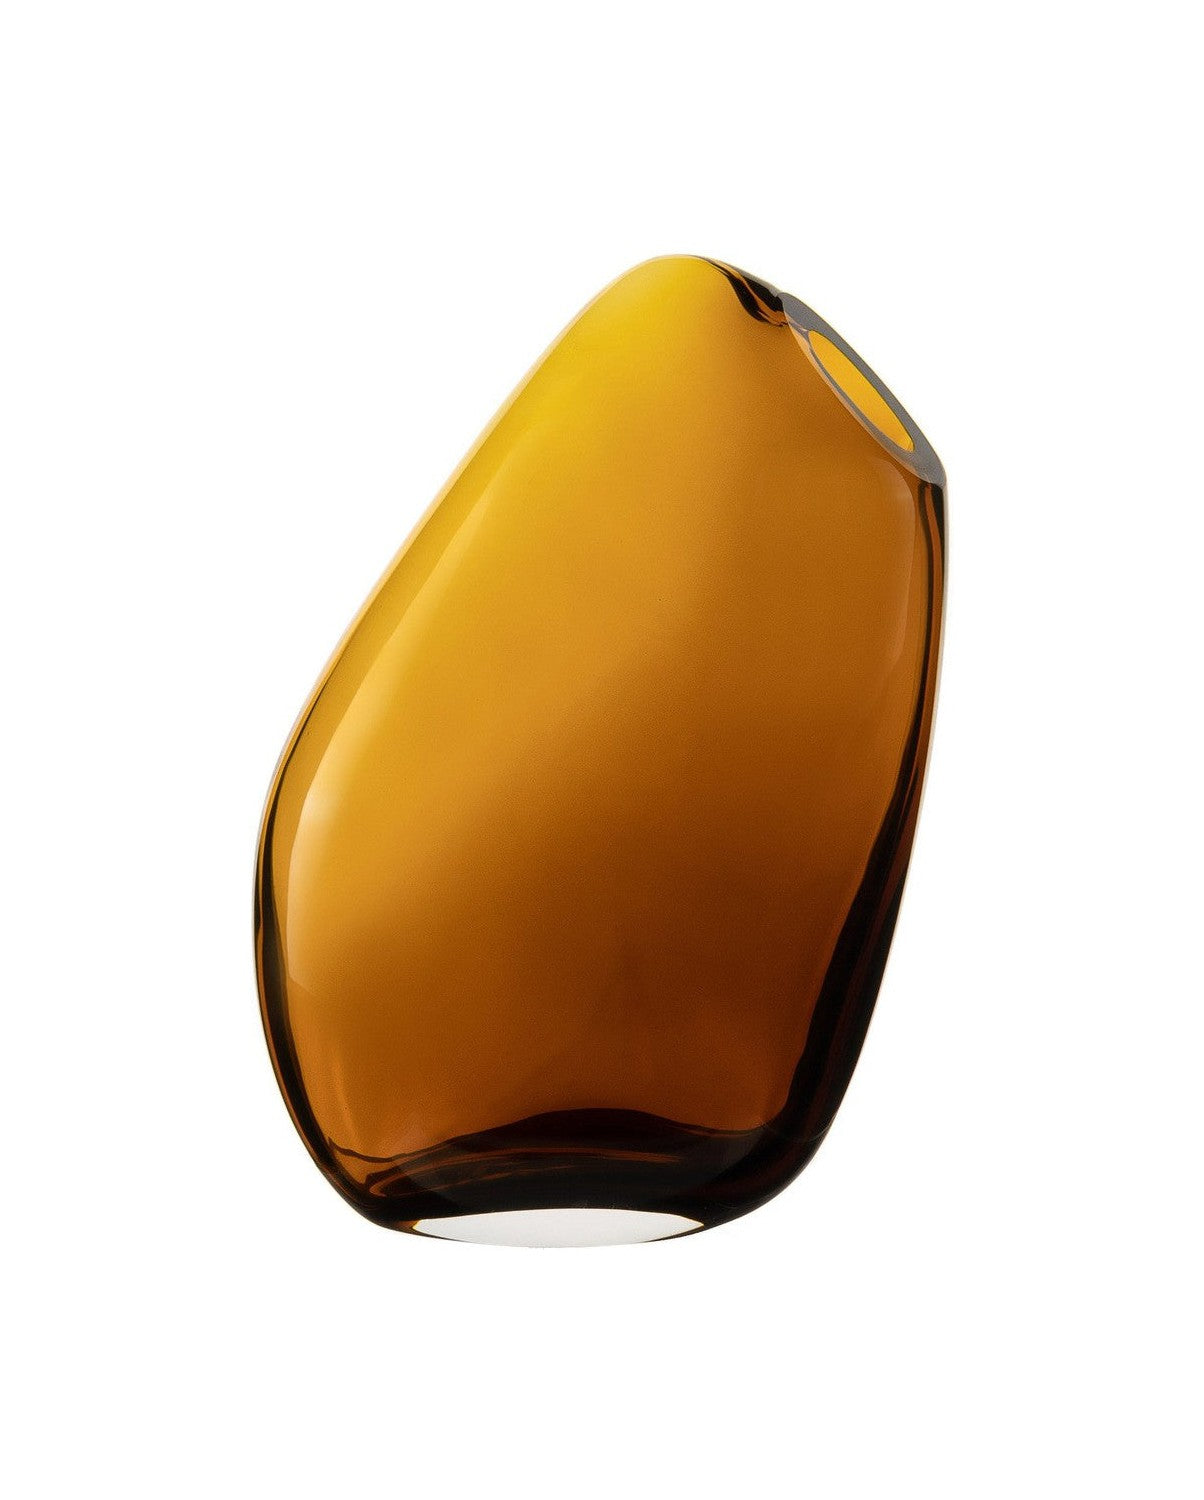 Hohe moderne Vase des sehr innovativen nüchternen Designs, Kooky30 Uhr